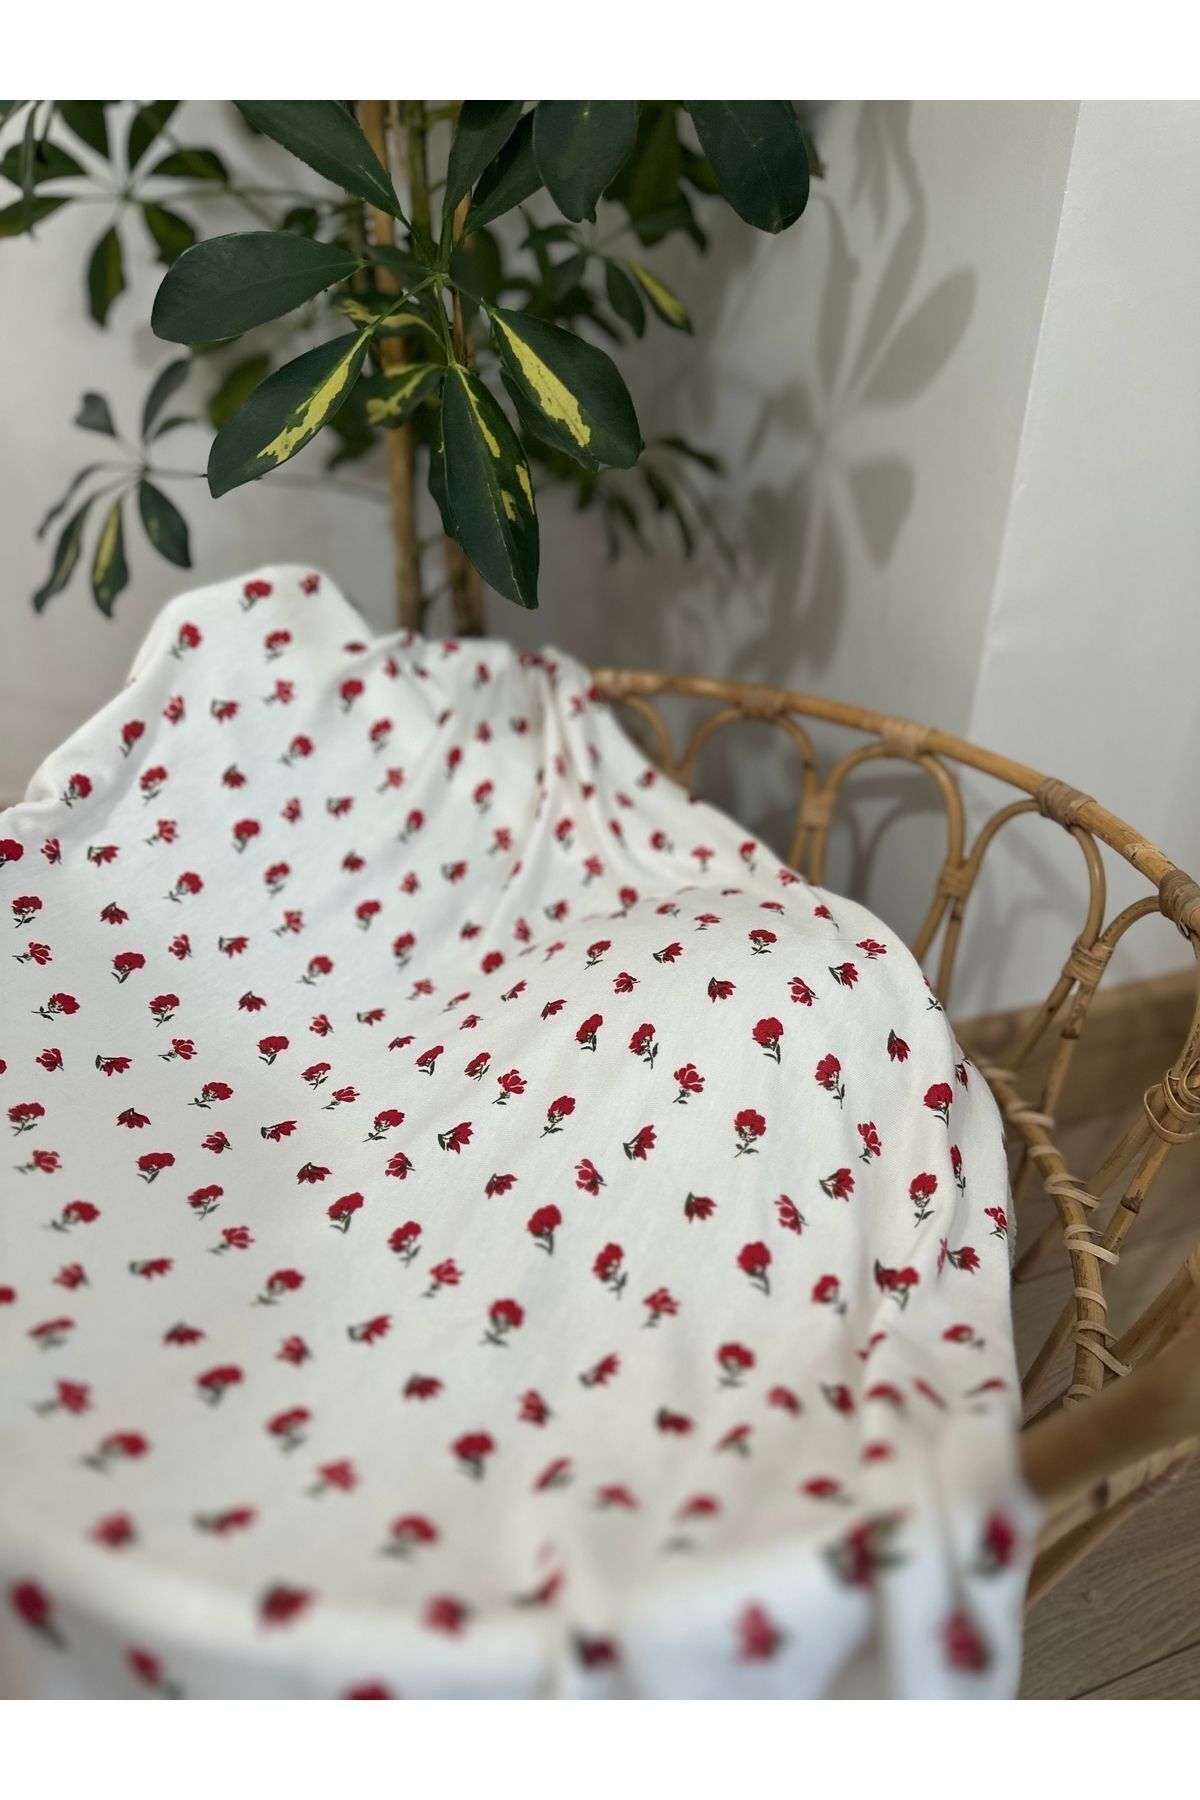 Yavuzoğulları Minik Çiçek Desen Pijamalık Kaş Korse Organik Kumaş 150 X 100